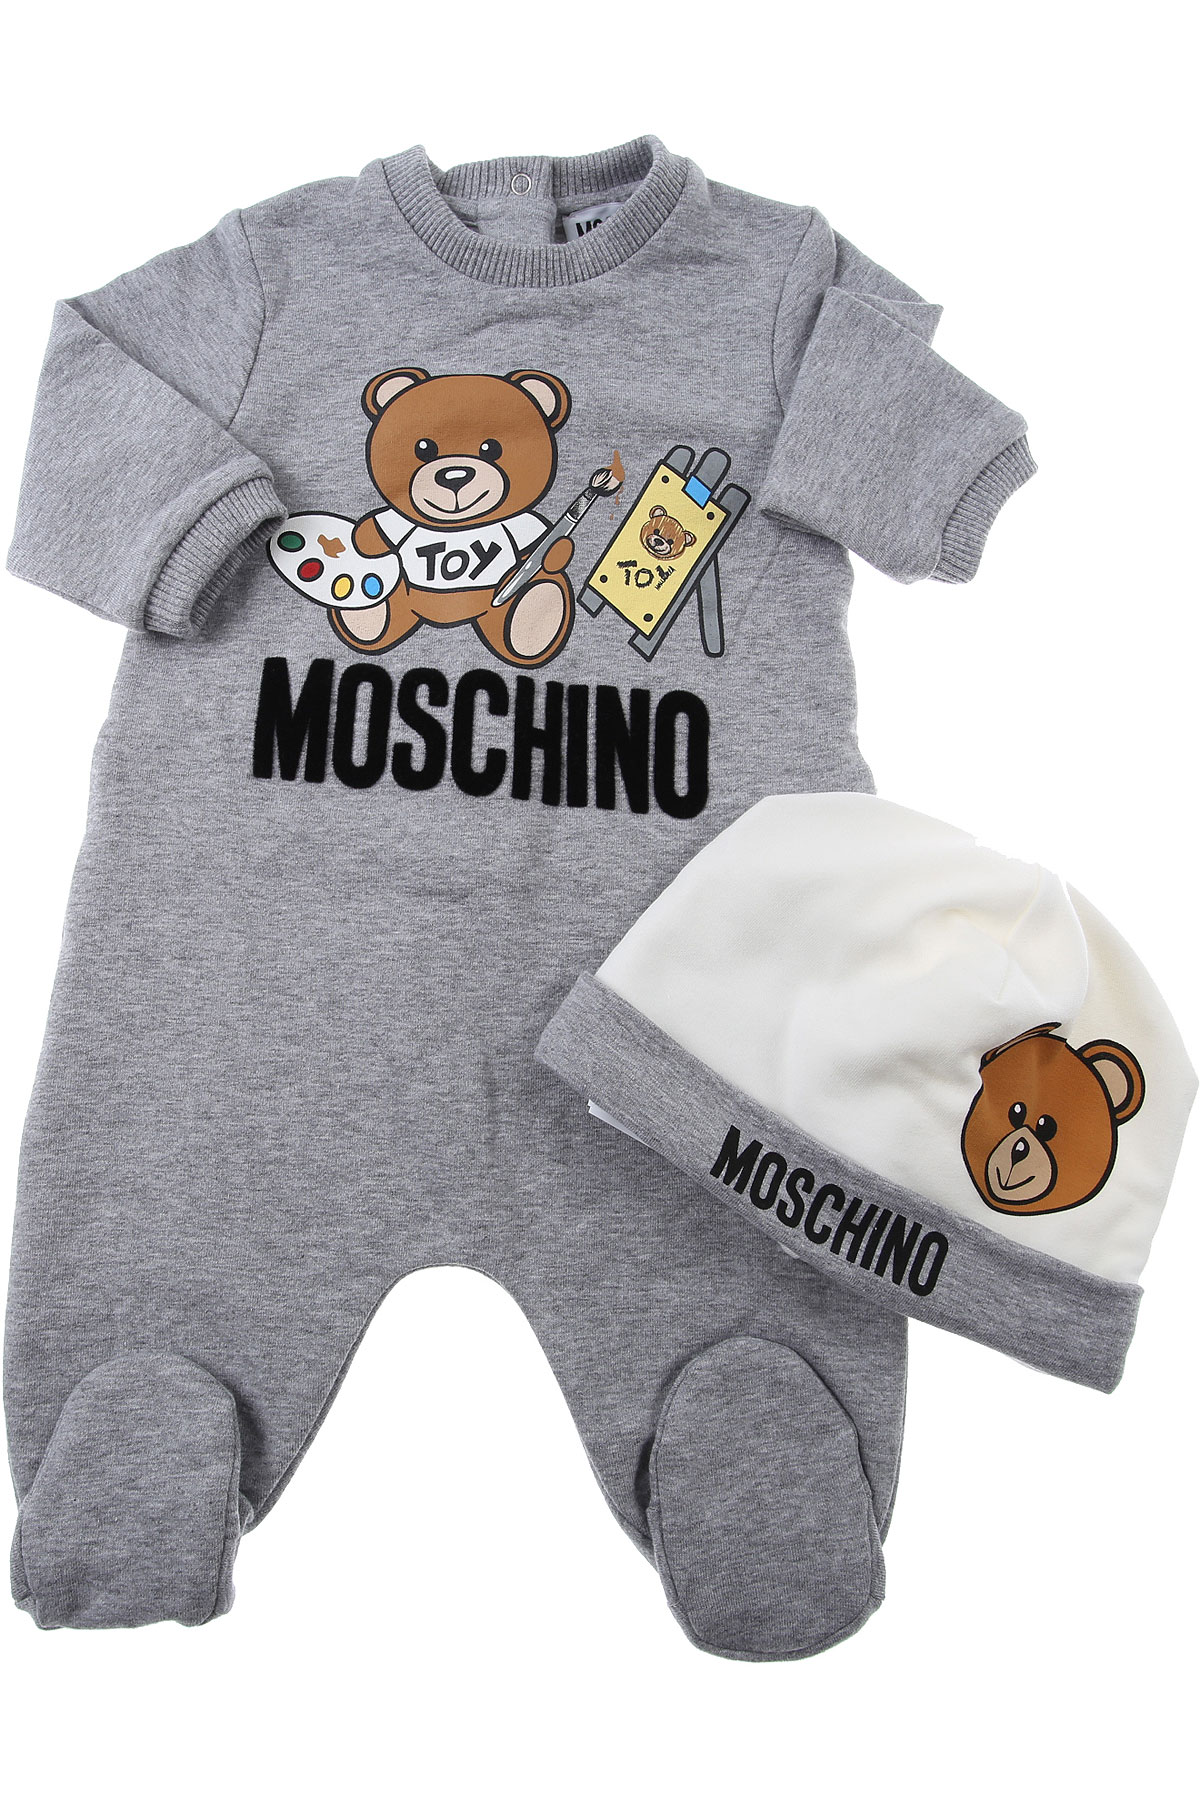 Moschino Baby Set für Jungen Günstig im Sale, Blau, Baumwolle, 2017, 12 M 3M 6M 9M